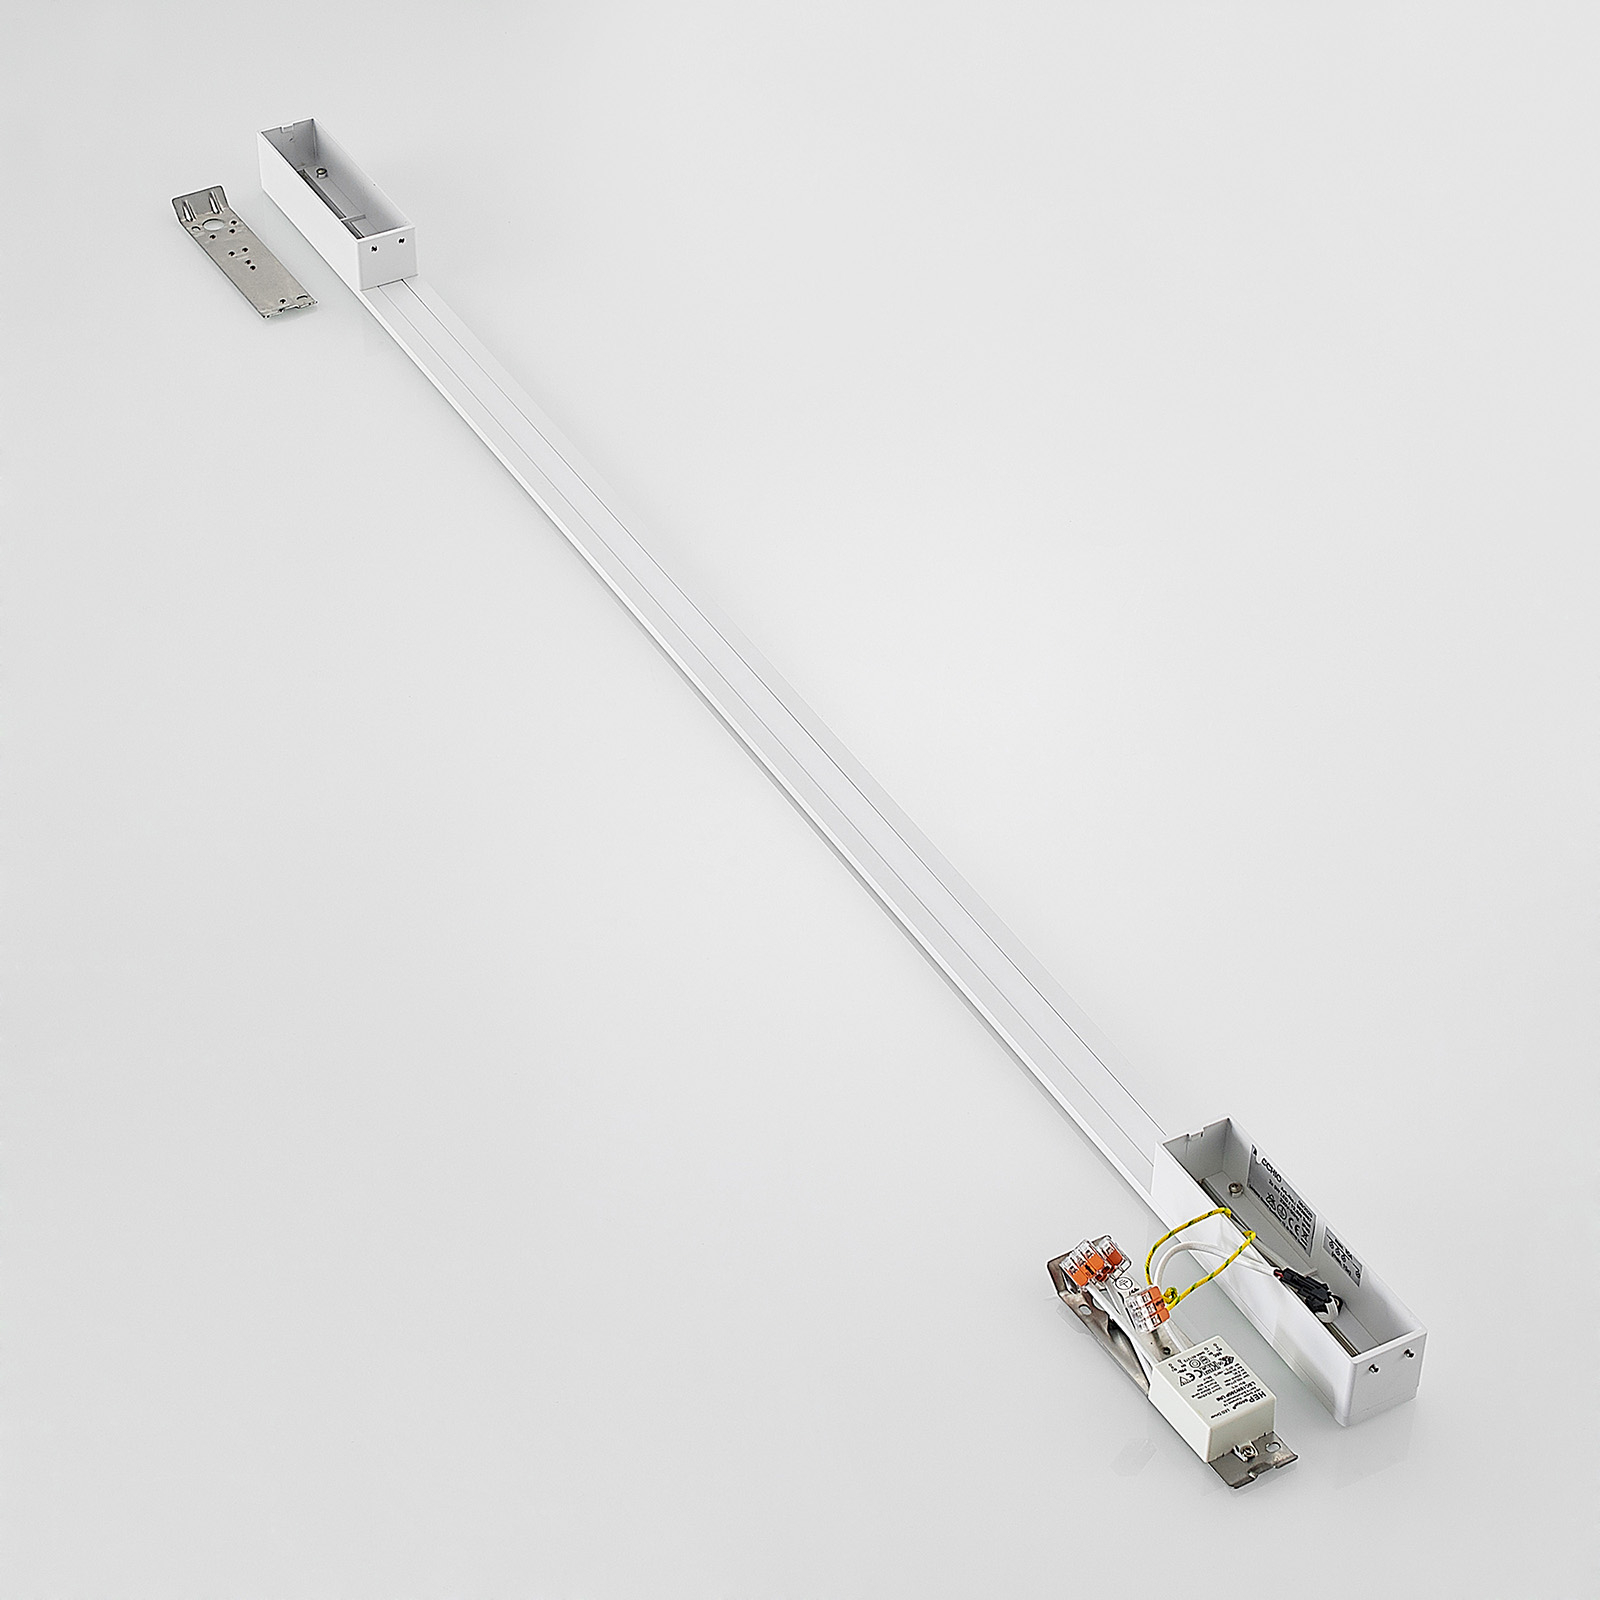 Arcchio Ivano LED wandlamp 130 cm wit